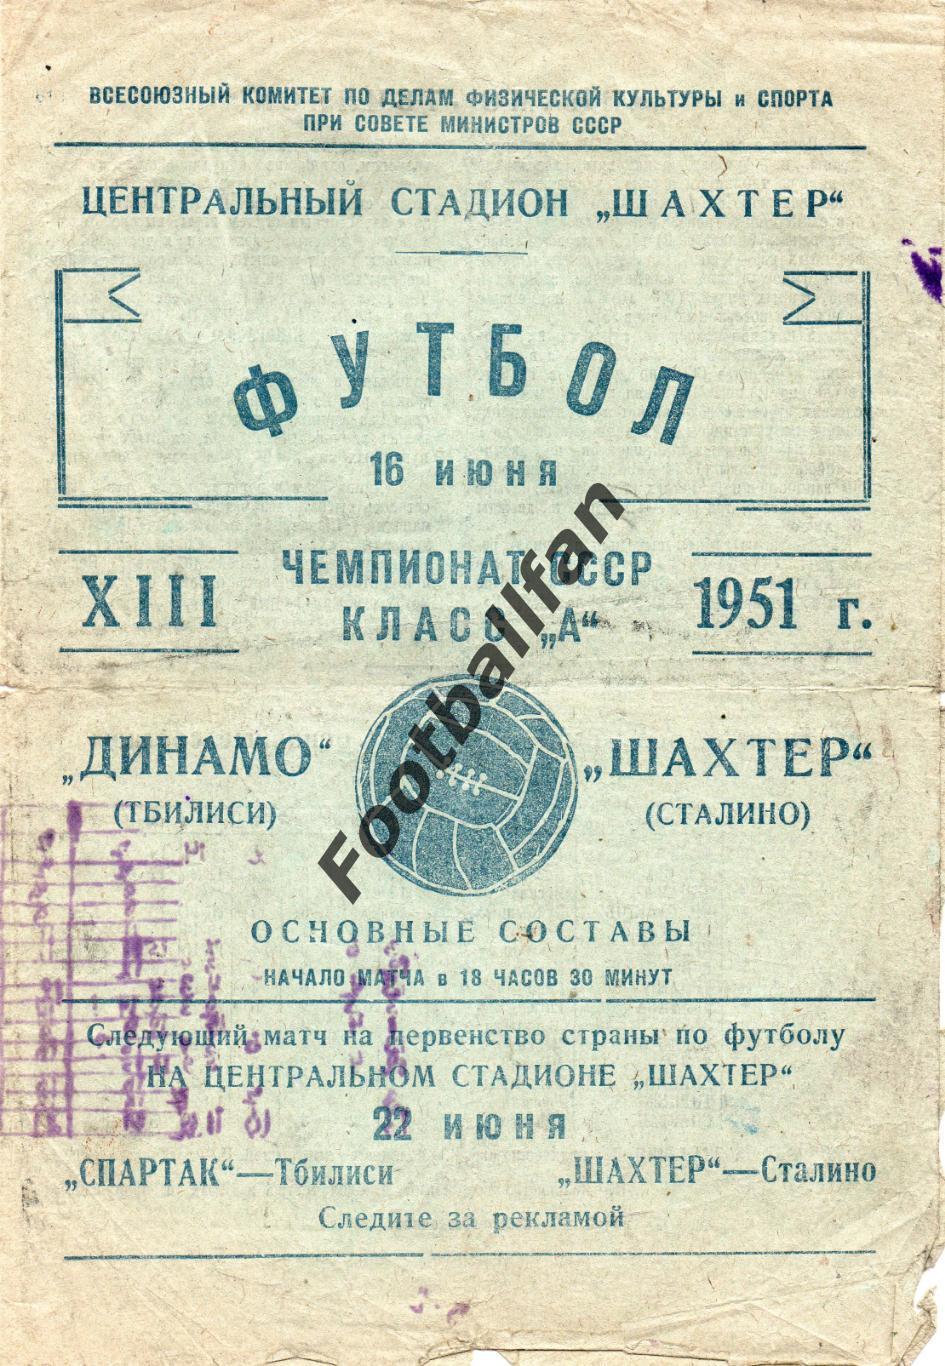 Шахтер Сталино ( Донецк ) - Динамо Тбилиси 16.06.1951